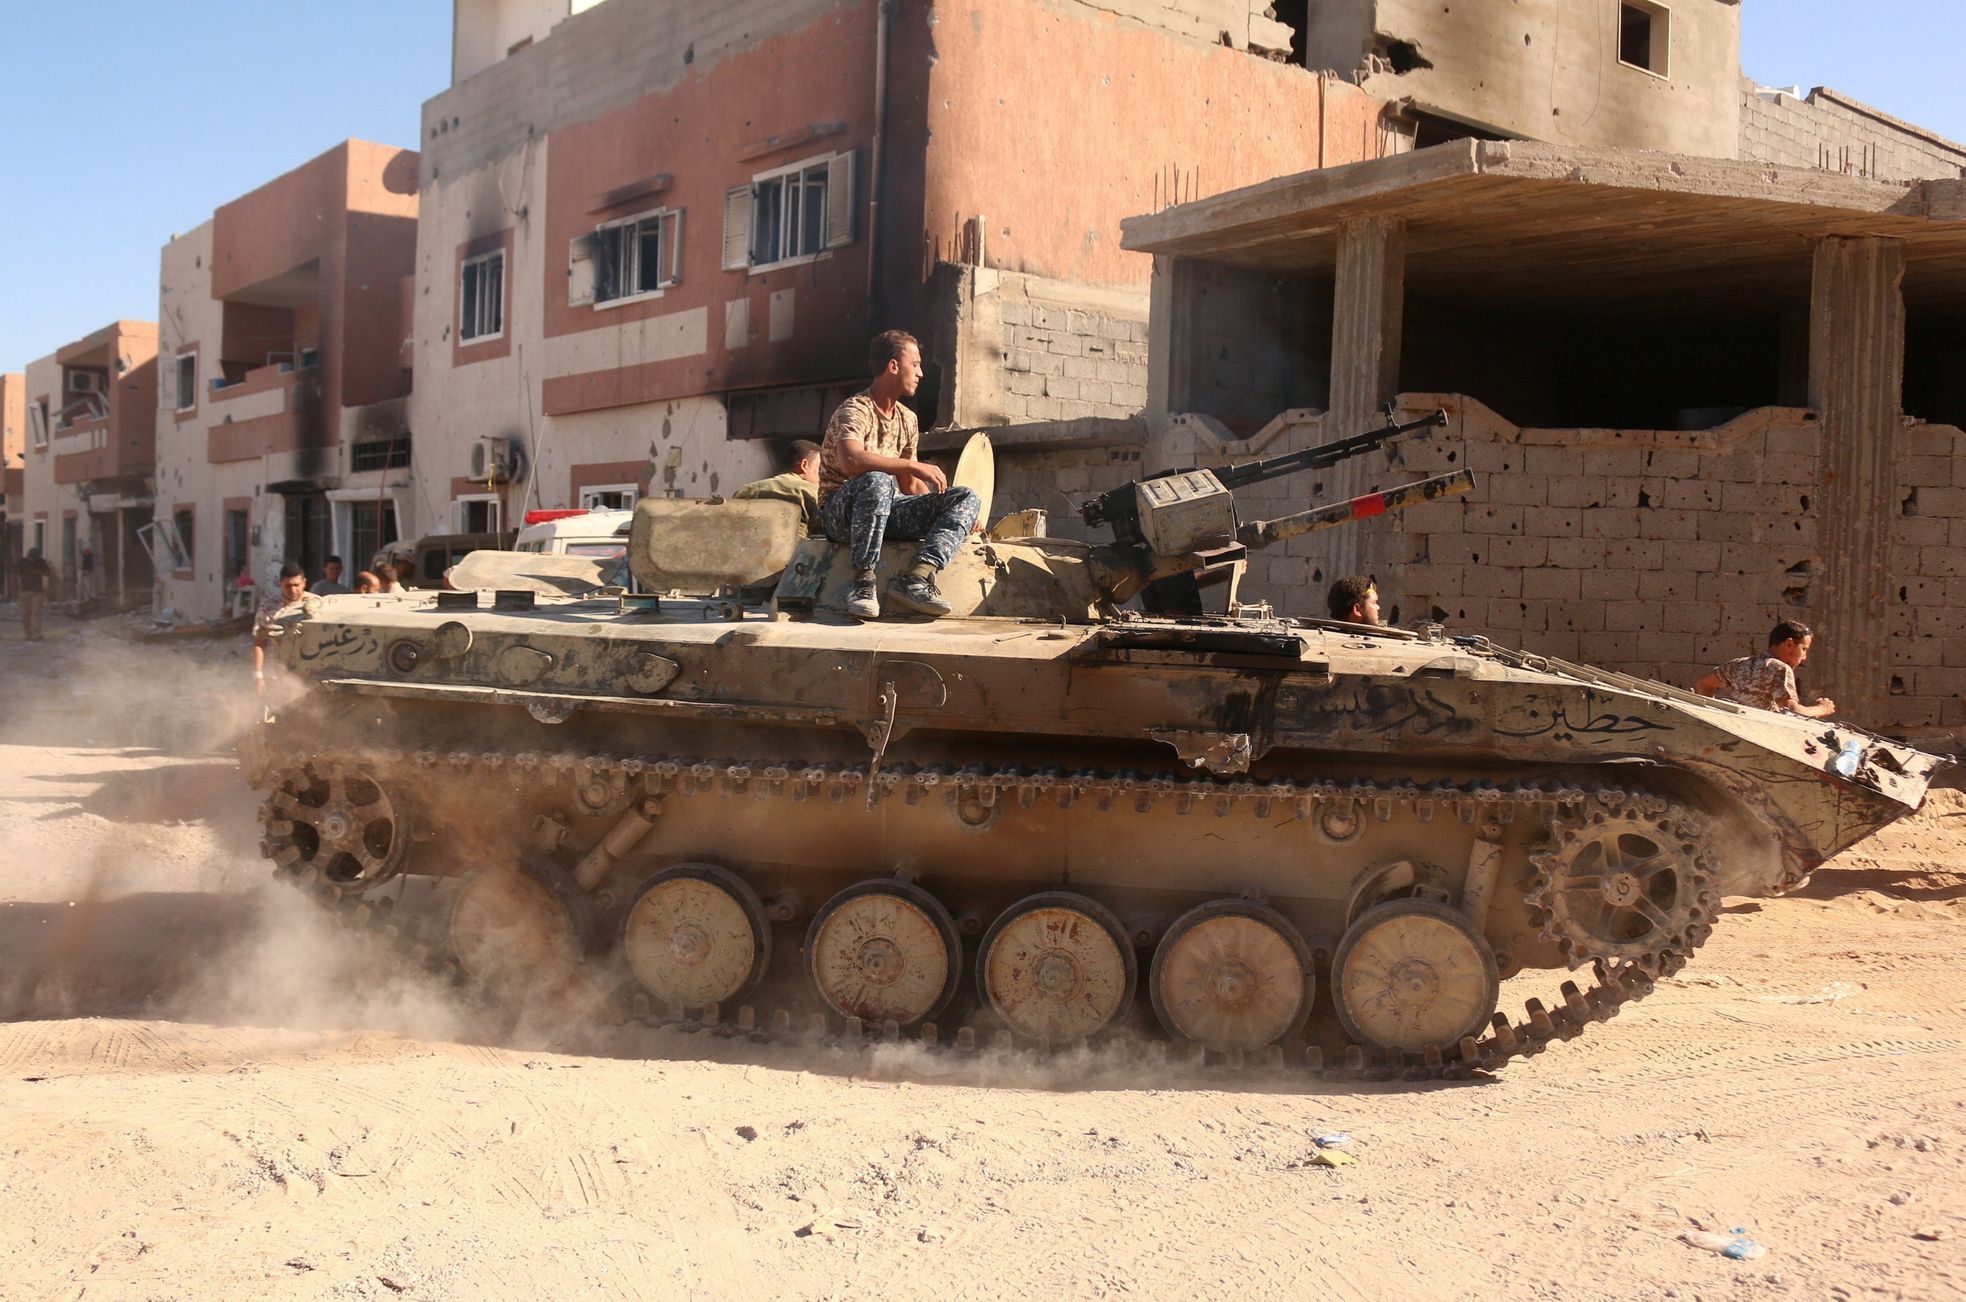 Boje v libyjské Syrtě